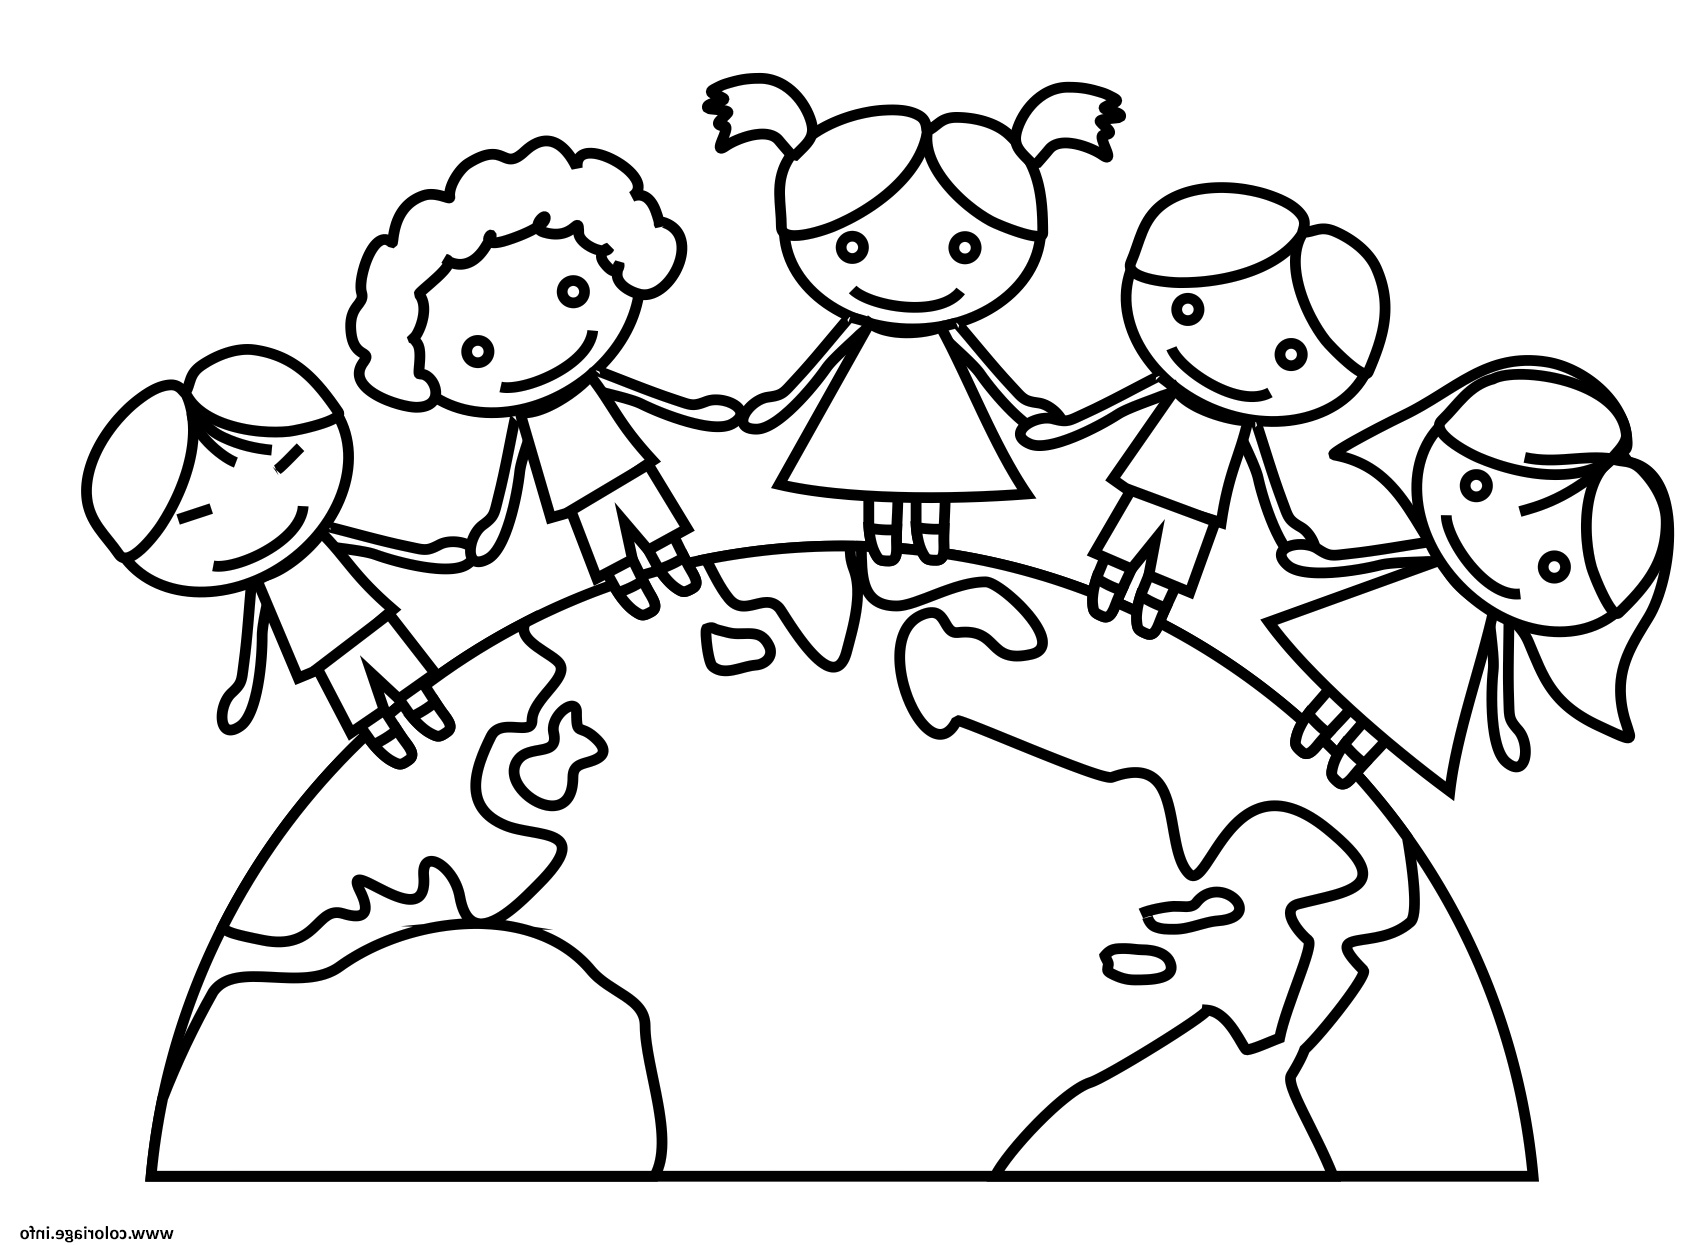 Dessin Animaux Enfant Inspirant Images Coloriage Jour De La Terre Maternelle Ecole Enfants